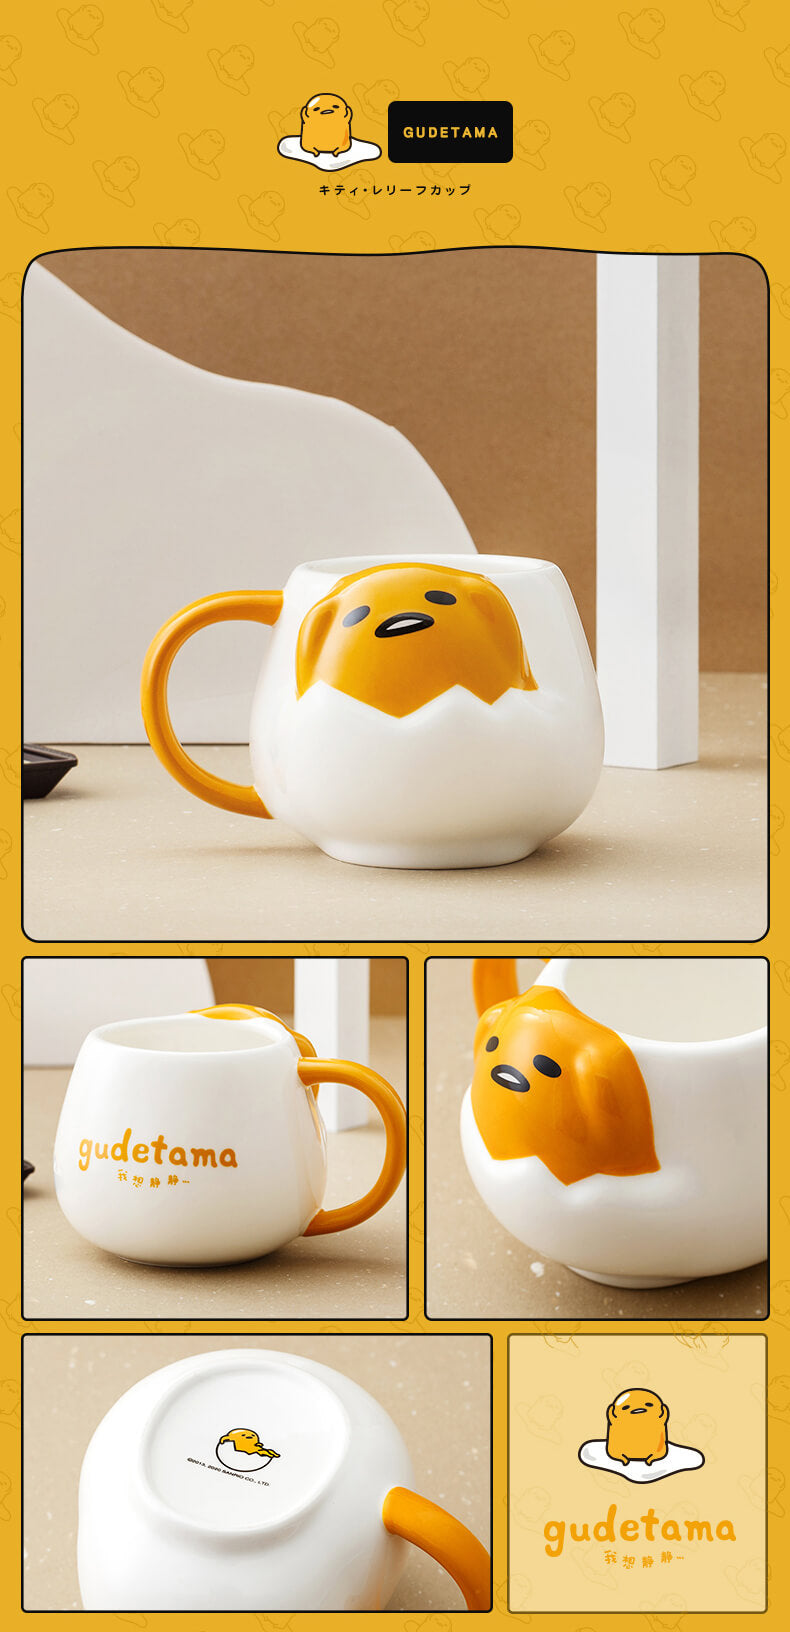 details-display-of-gudetama-face-die-cut-ceramic-mug